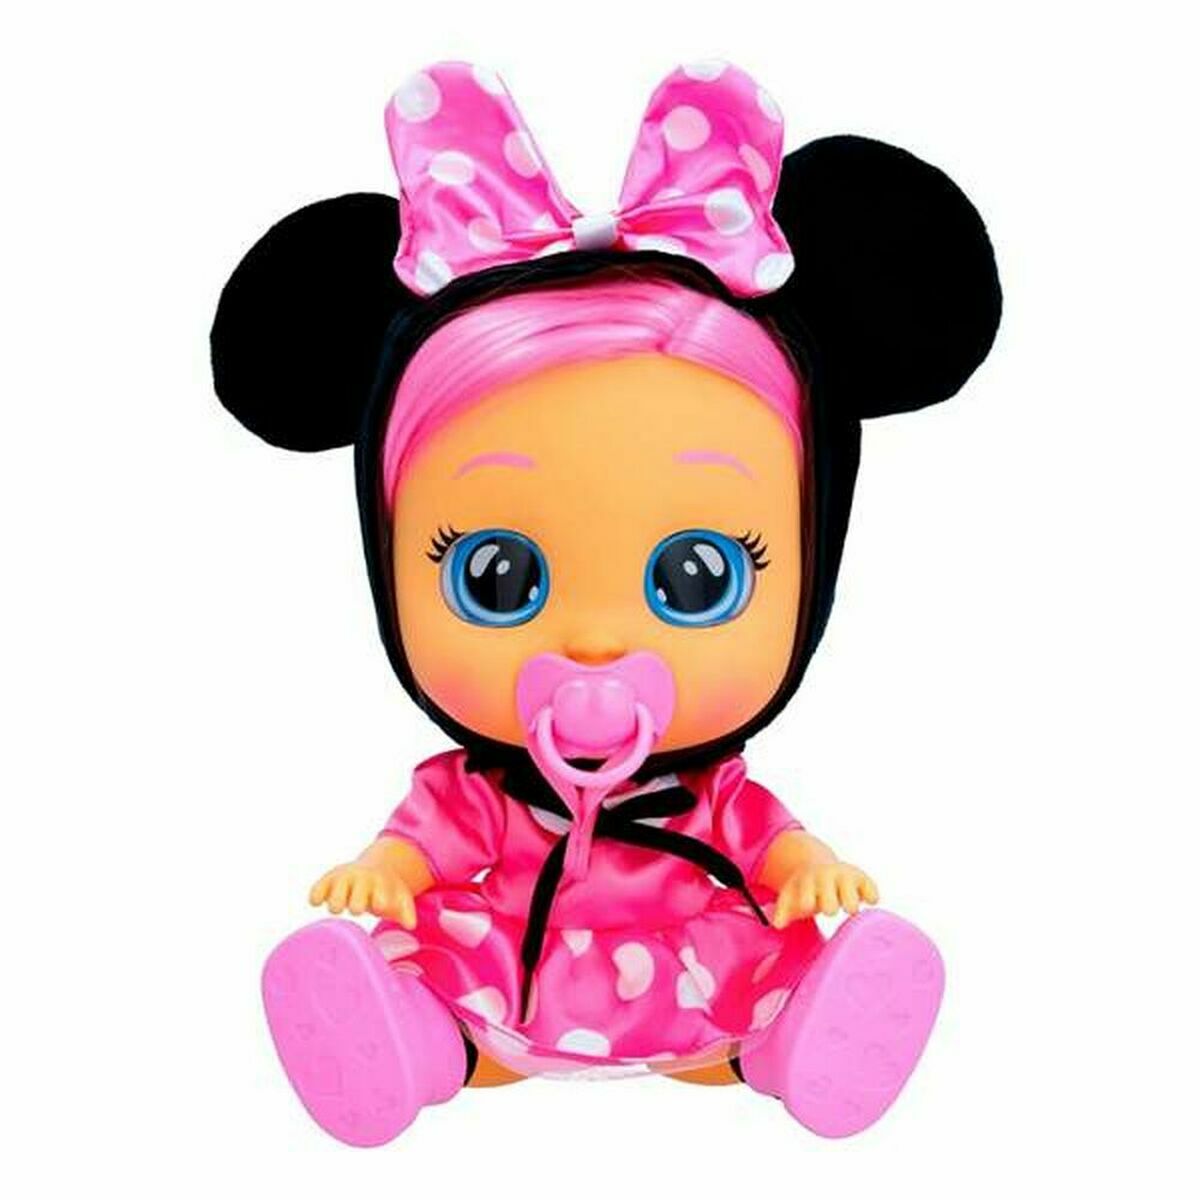 Osta tuote Vauvanukke IMC Toys Cry Baby Dressy Minnie 30 cm verkkokaupastamme Korhone: Lelut & Asut 20% alennuksella koodilla VIIKONLOPPU